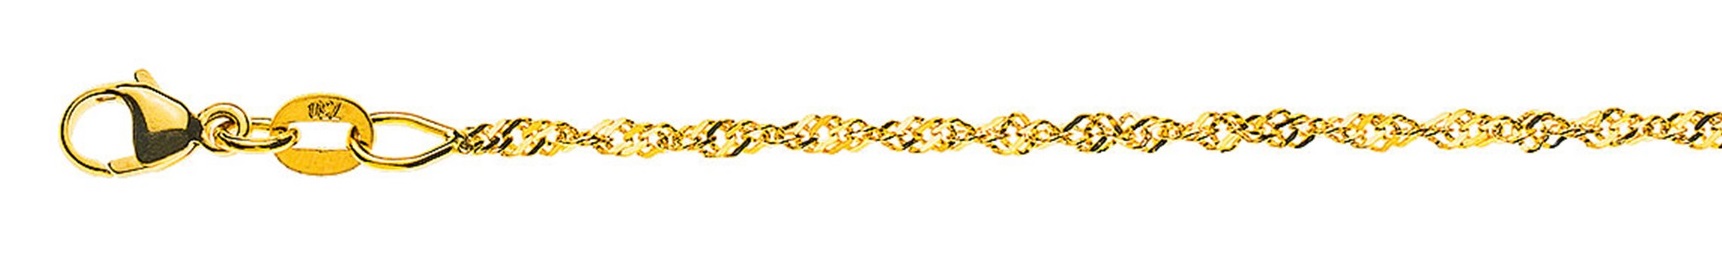 AURONOS Prestige Halskette Gelbgold 18K Singapurkette 55cm 1.5mm